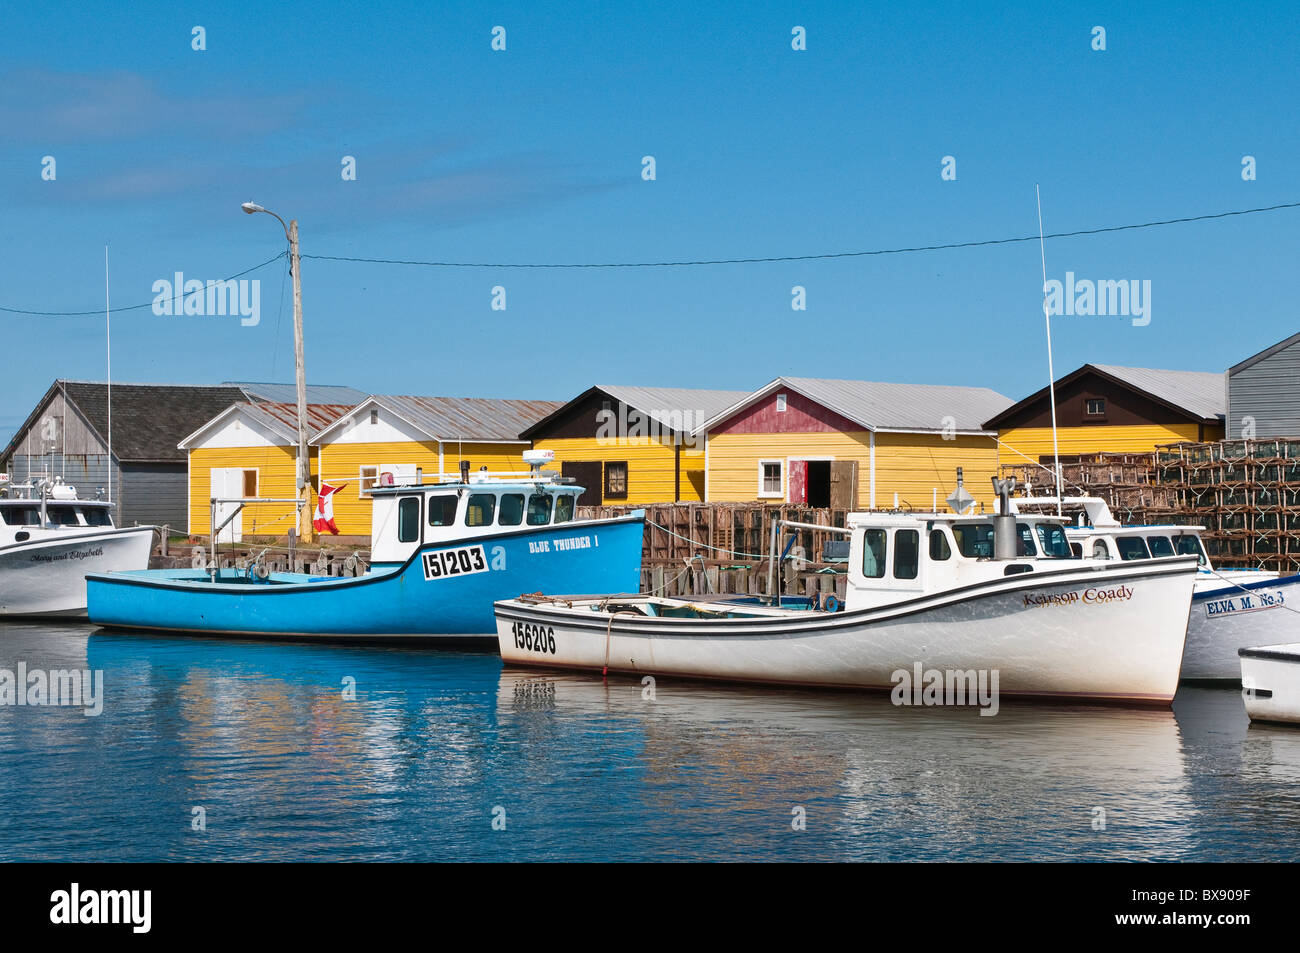 Bateaux de pêche, North Lake Harbour, Île-du-Prince-Édouard, Maritimes, Canada. Banque D'Images